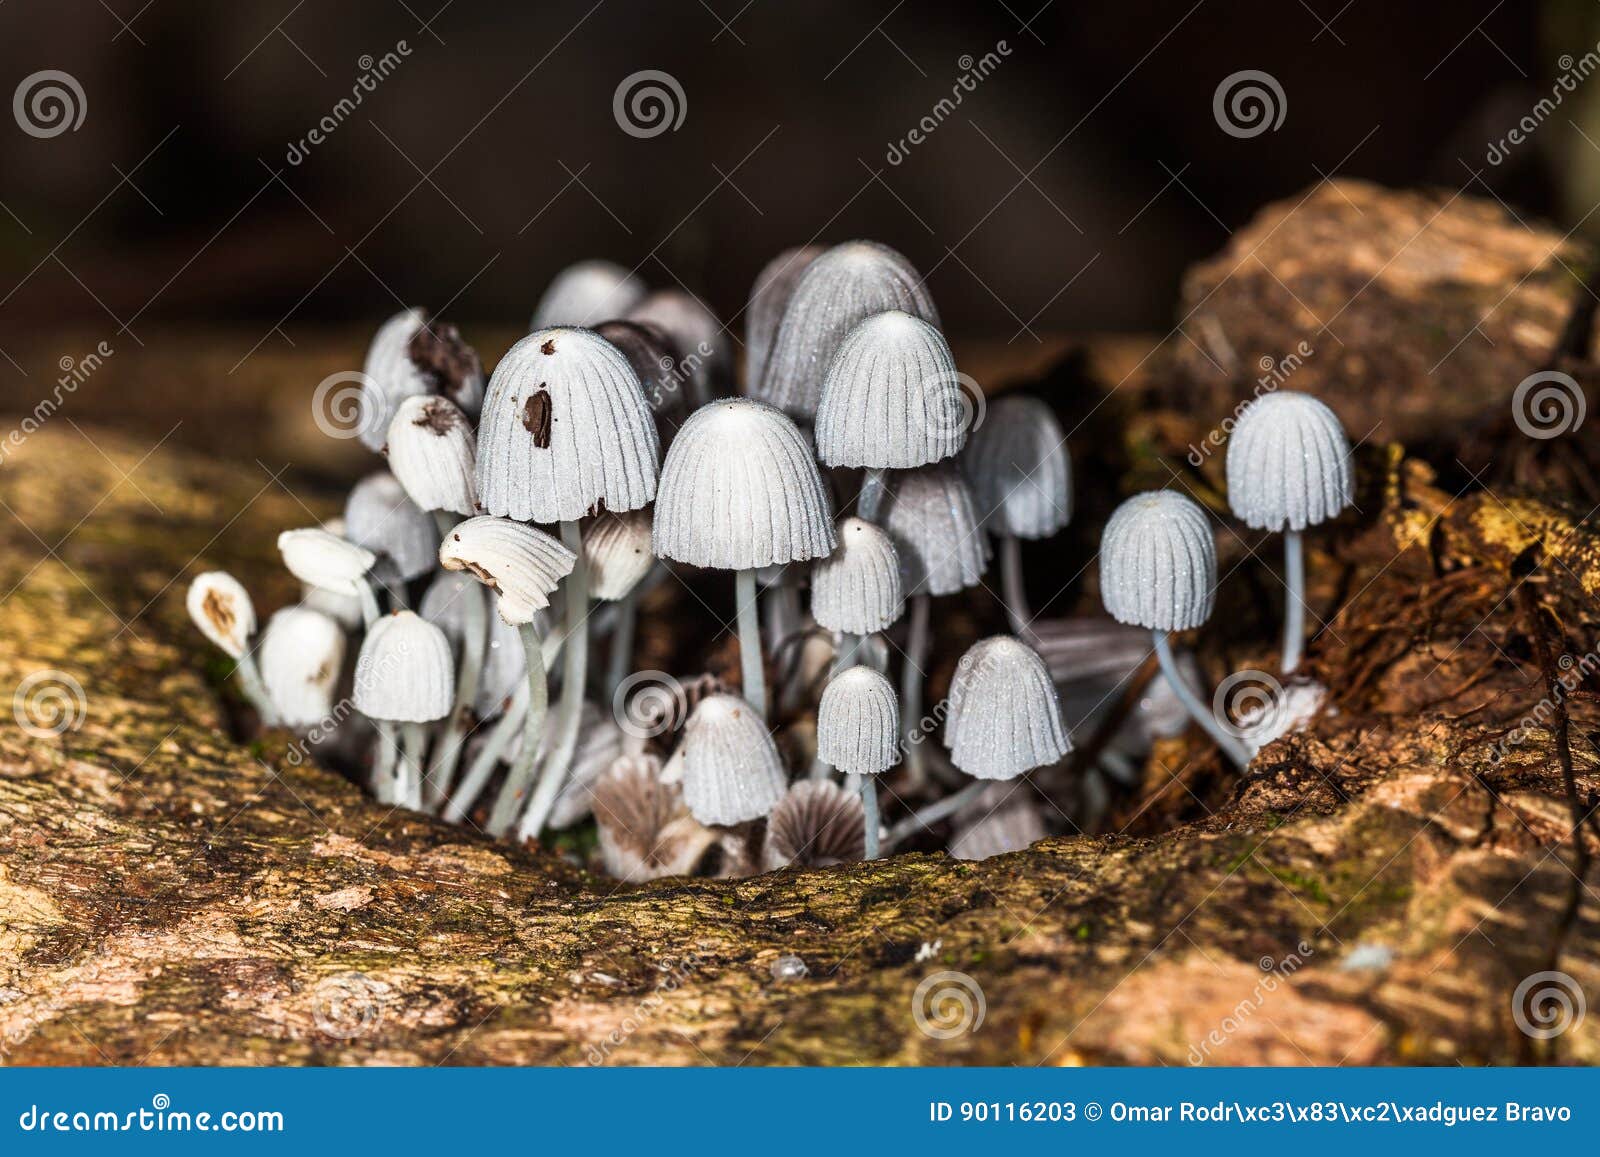 hongos silvestres - mushrooms - fungus